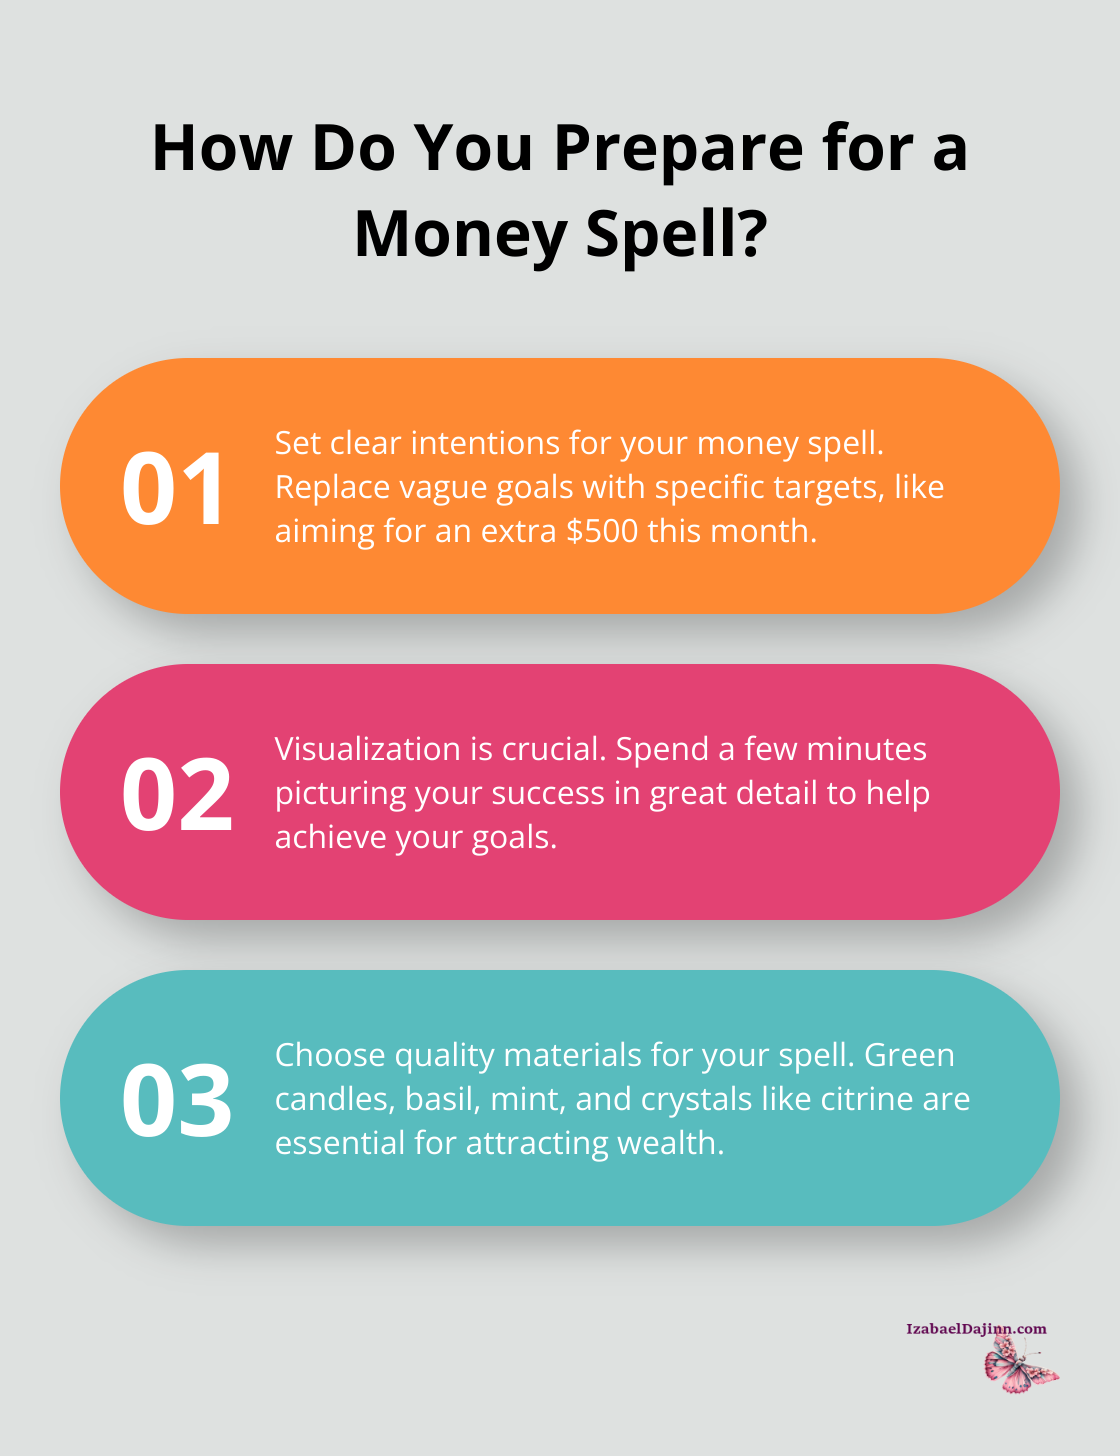 Fact - How Do You Prepare for a Money Spell?